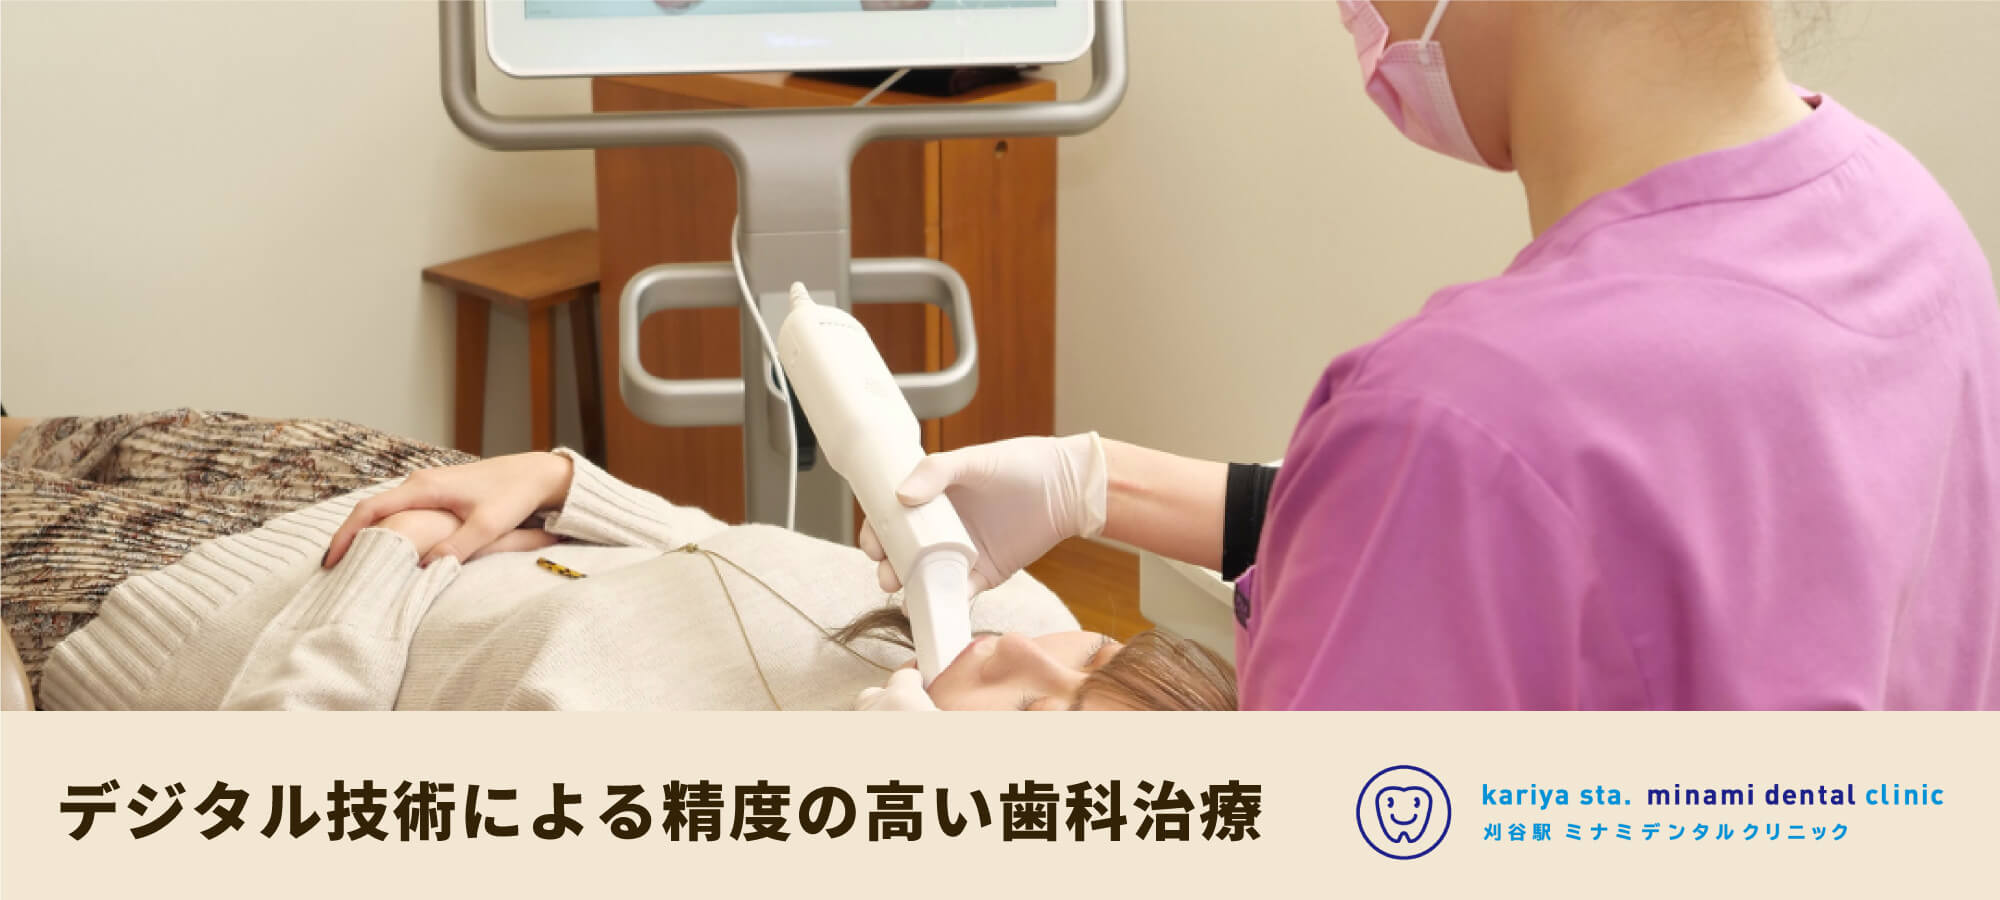 デジタル技術による精度の高い歯科治療